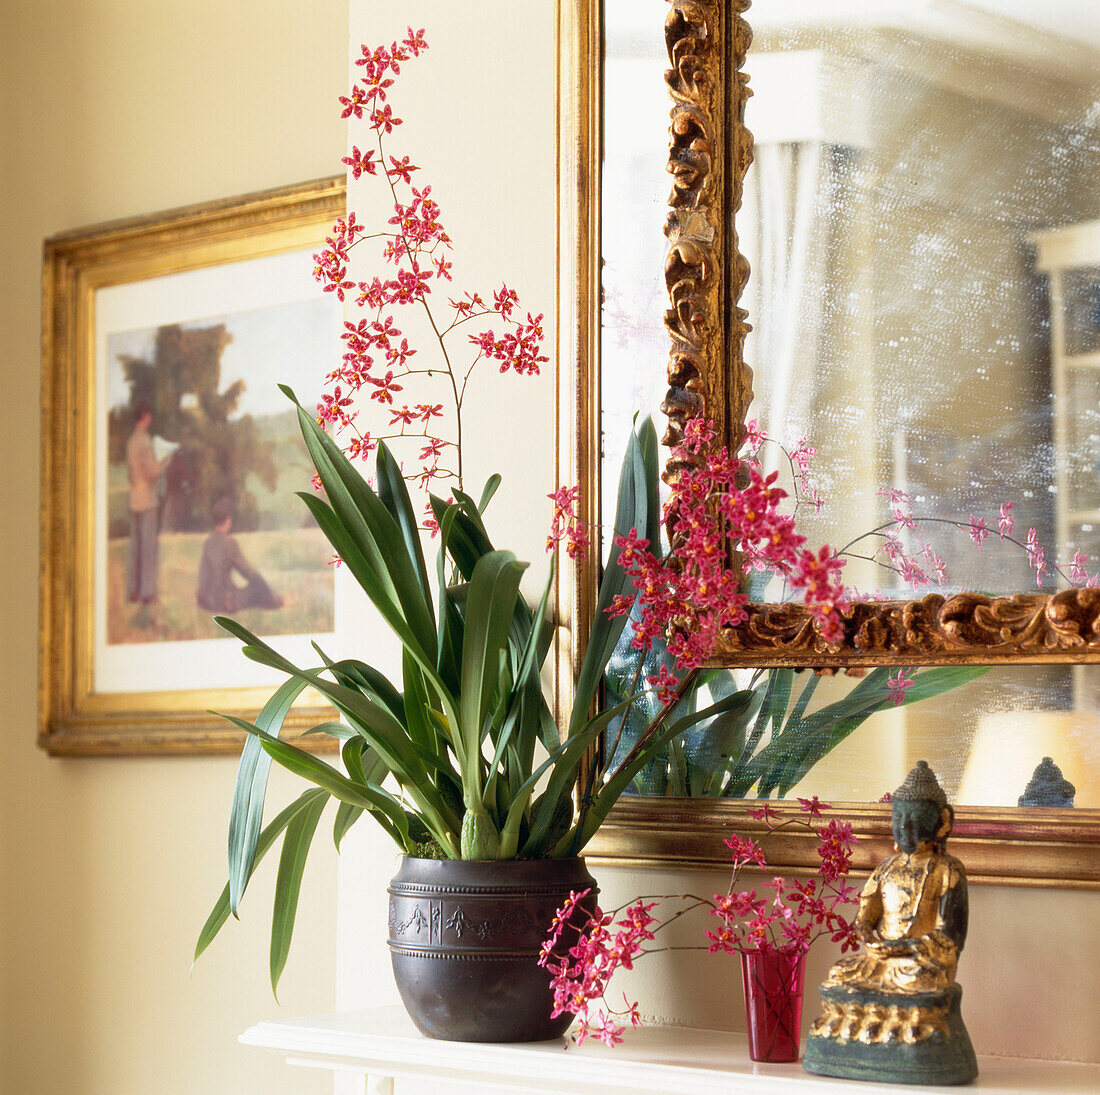 Hübsche rosafarbene Orchideen auf einem Kaminsims mit verziertem vergoldetem Spiegel und Buddha